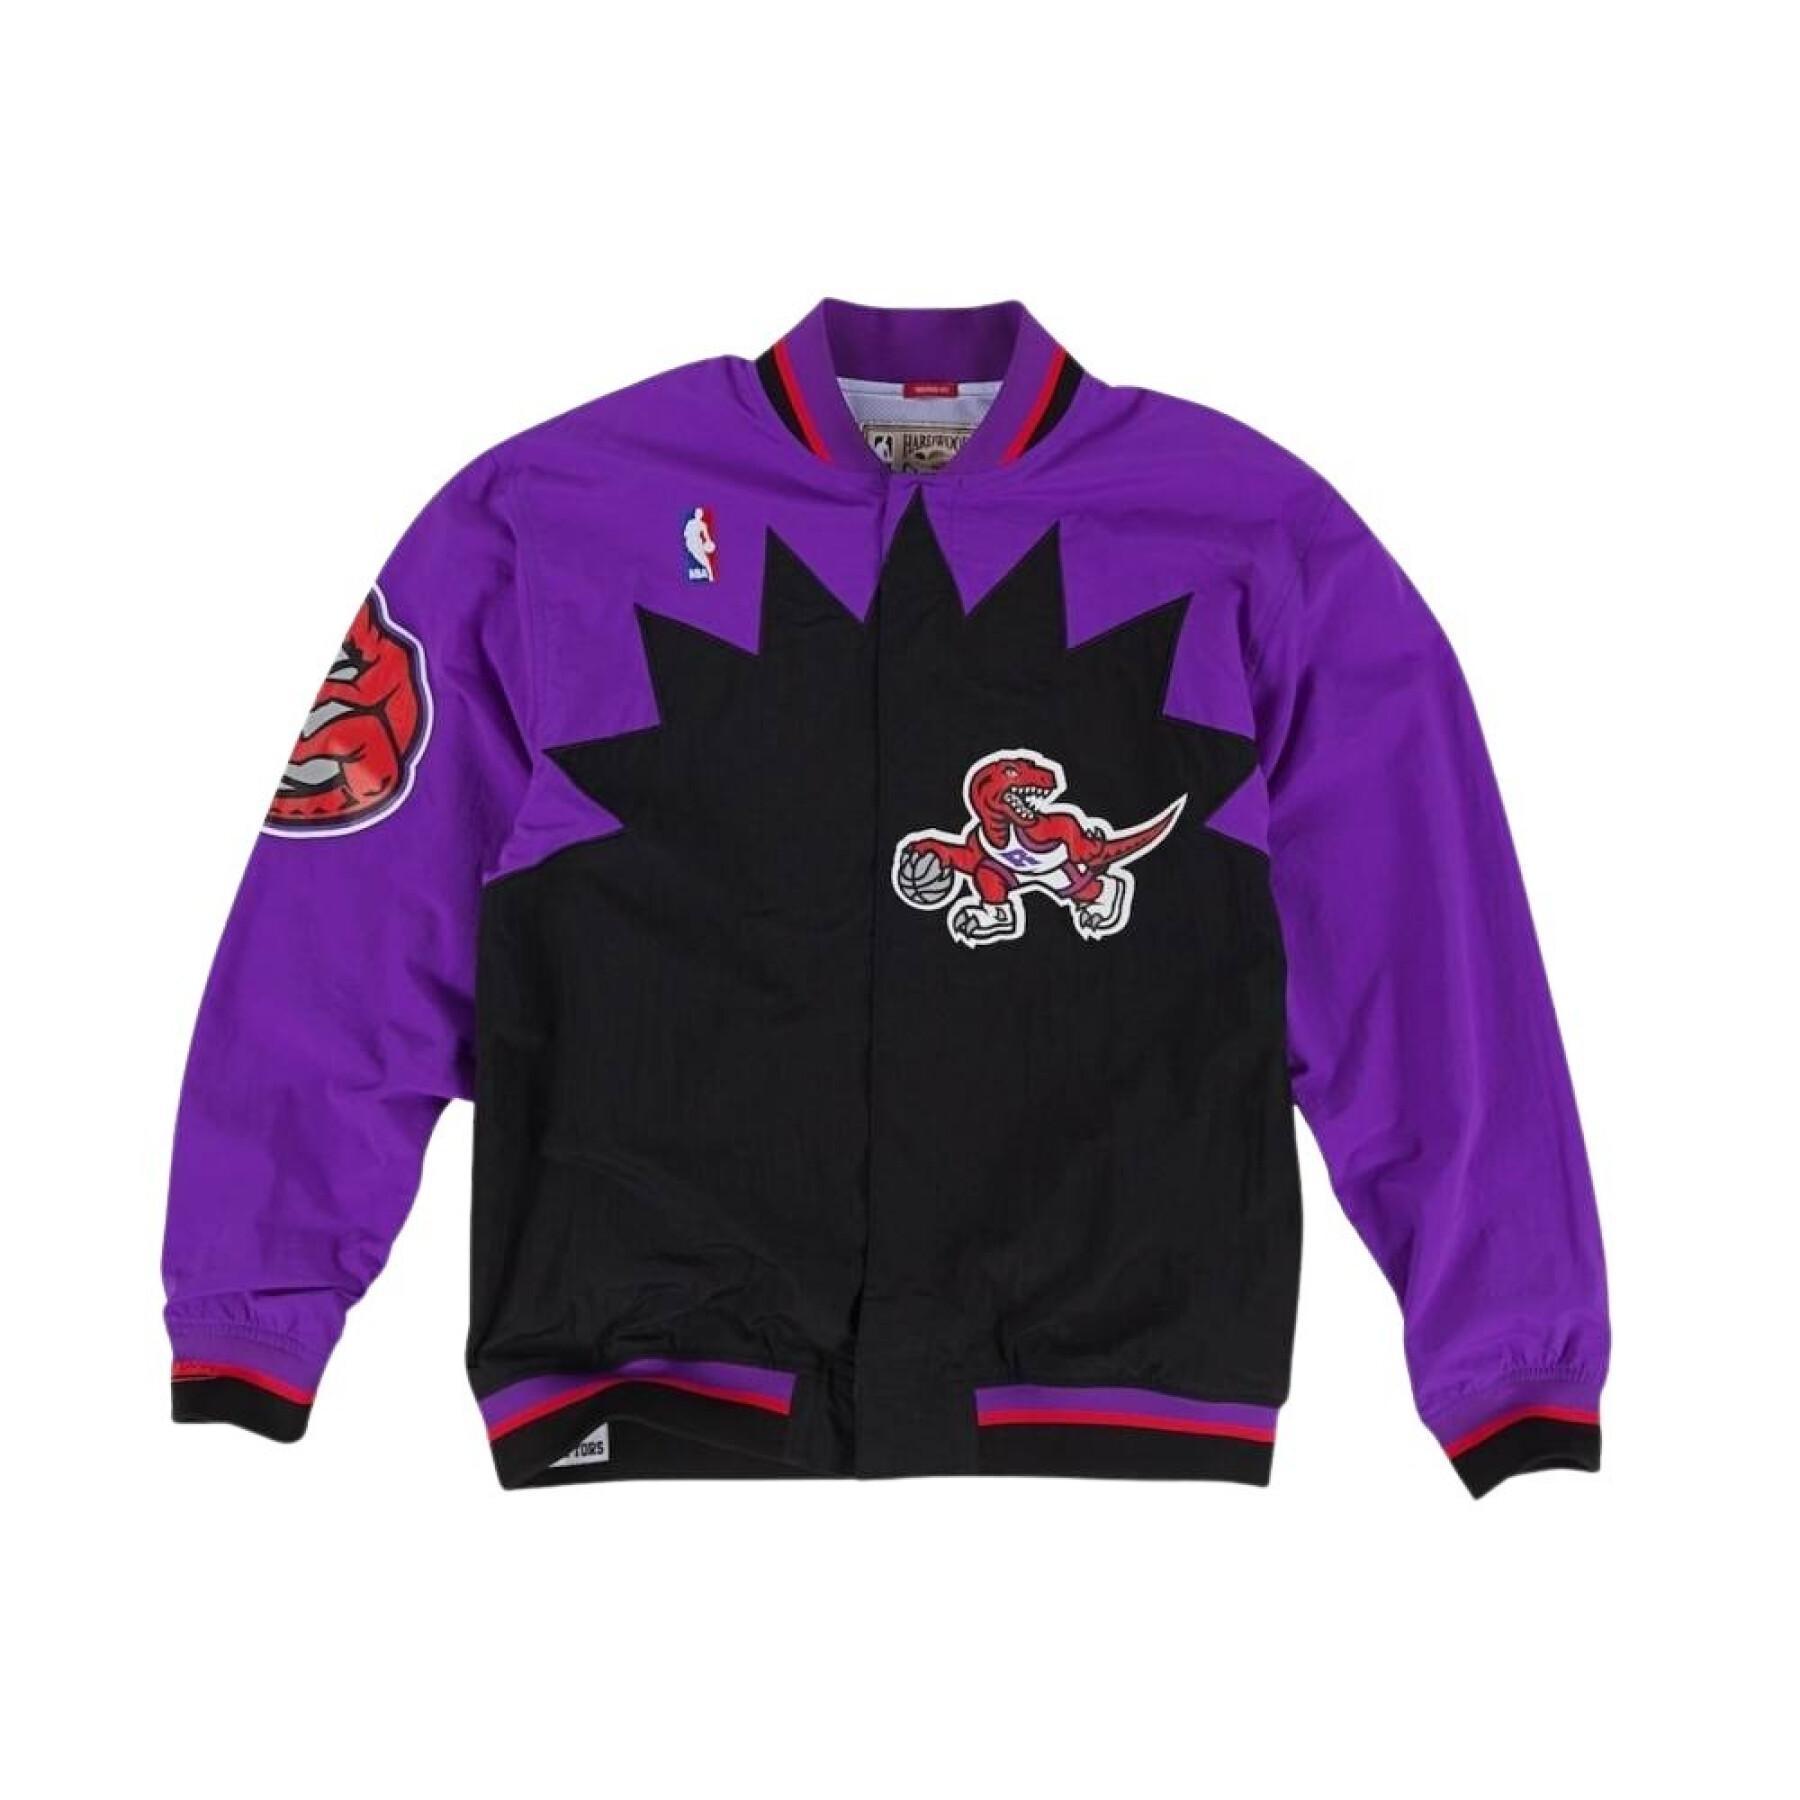 Giacca Toronto Raptors authentic 1995/96